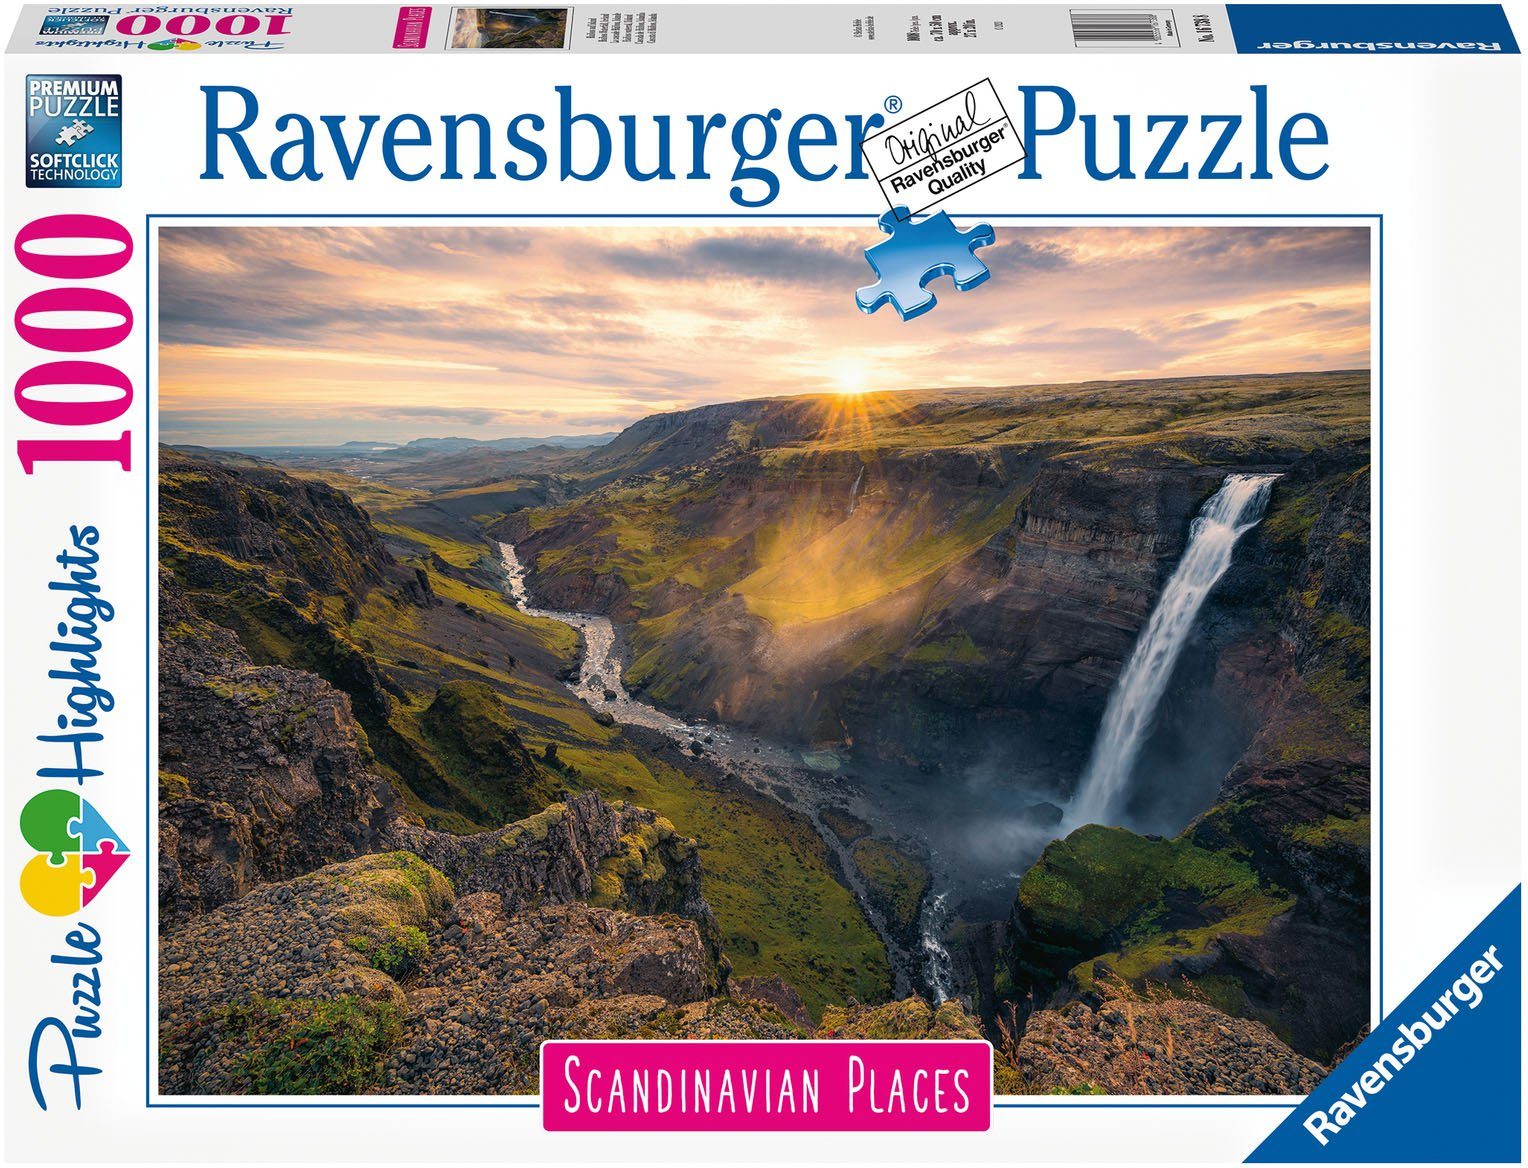 Ravensburger Puzzle Haifoss auf Island, 1000 Puzzleteile, Made in Germany, FSC® - schützt Wald - weltweit